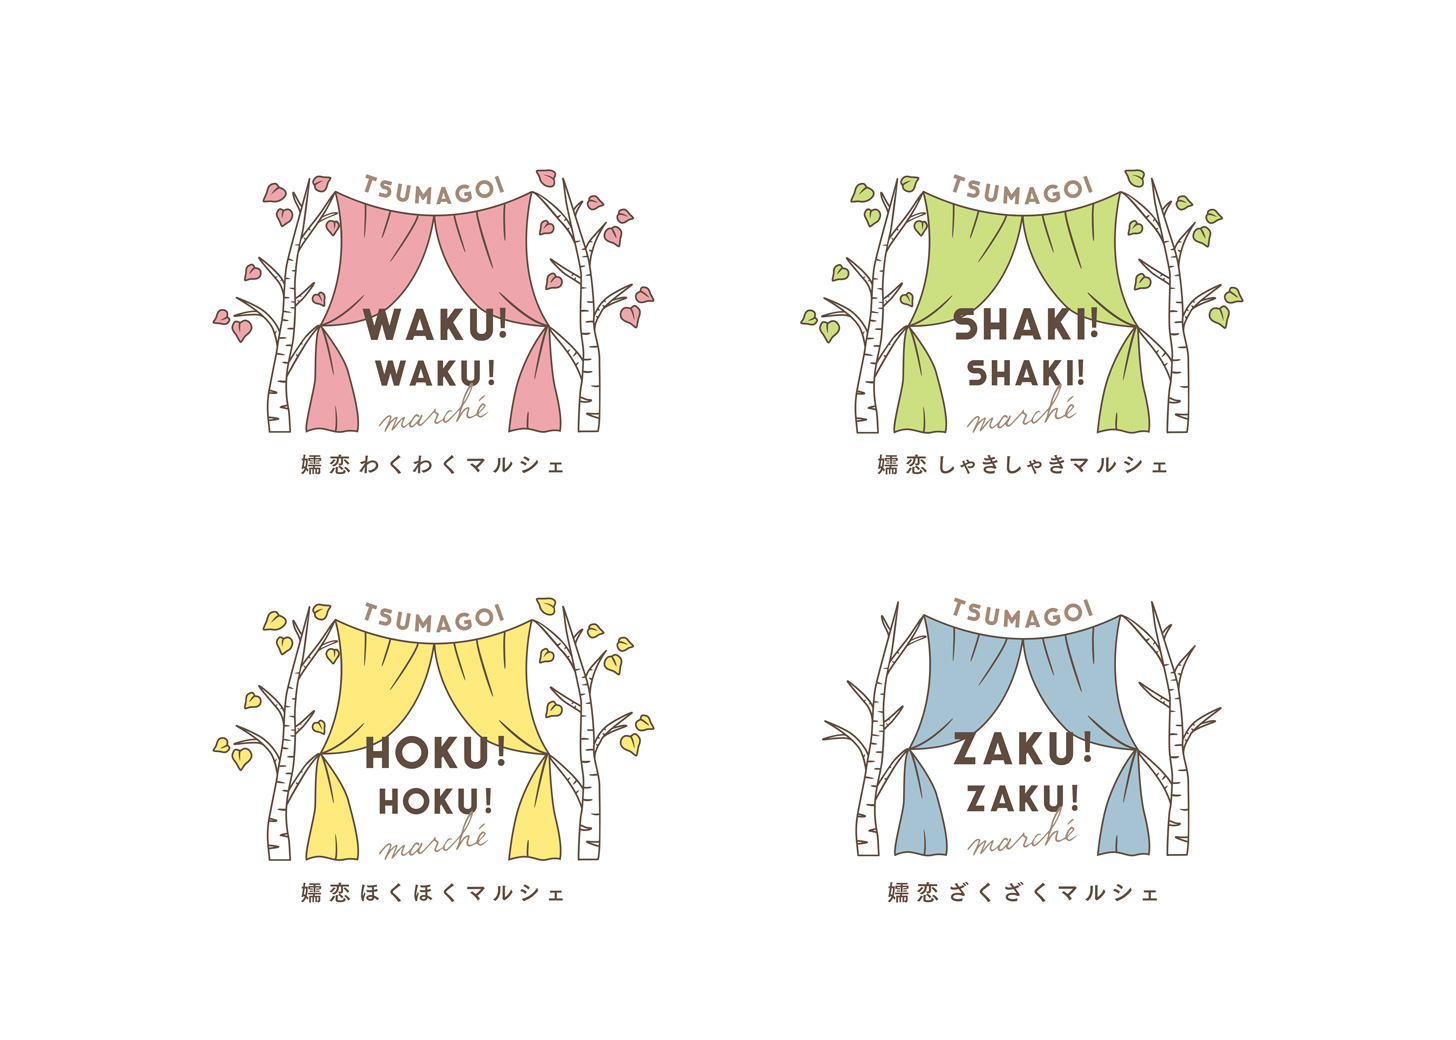 嬬恋HOKU!HOKU!marchéのロゴデザイン